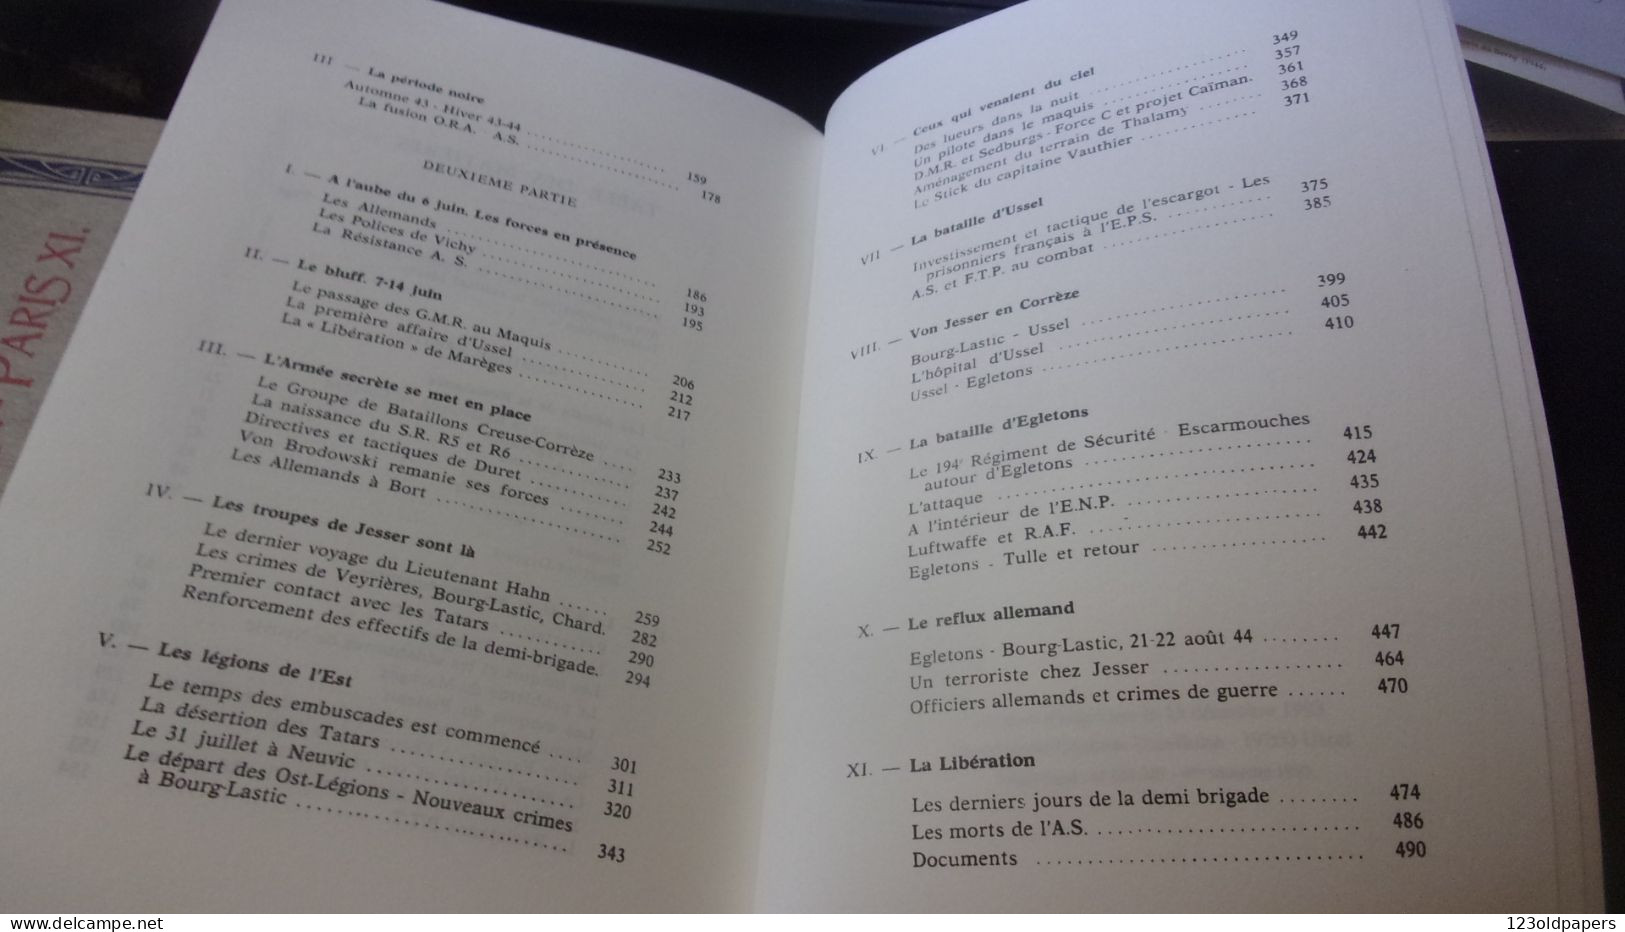 L'Armée secrète en Haute-Corrèze : 1942-1944  LE MOIGNE BARBANCEYS 508 PAGES CREUSE LIMOUSIN  WWII EGLETONS USSEL BOURG